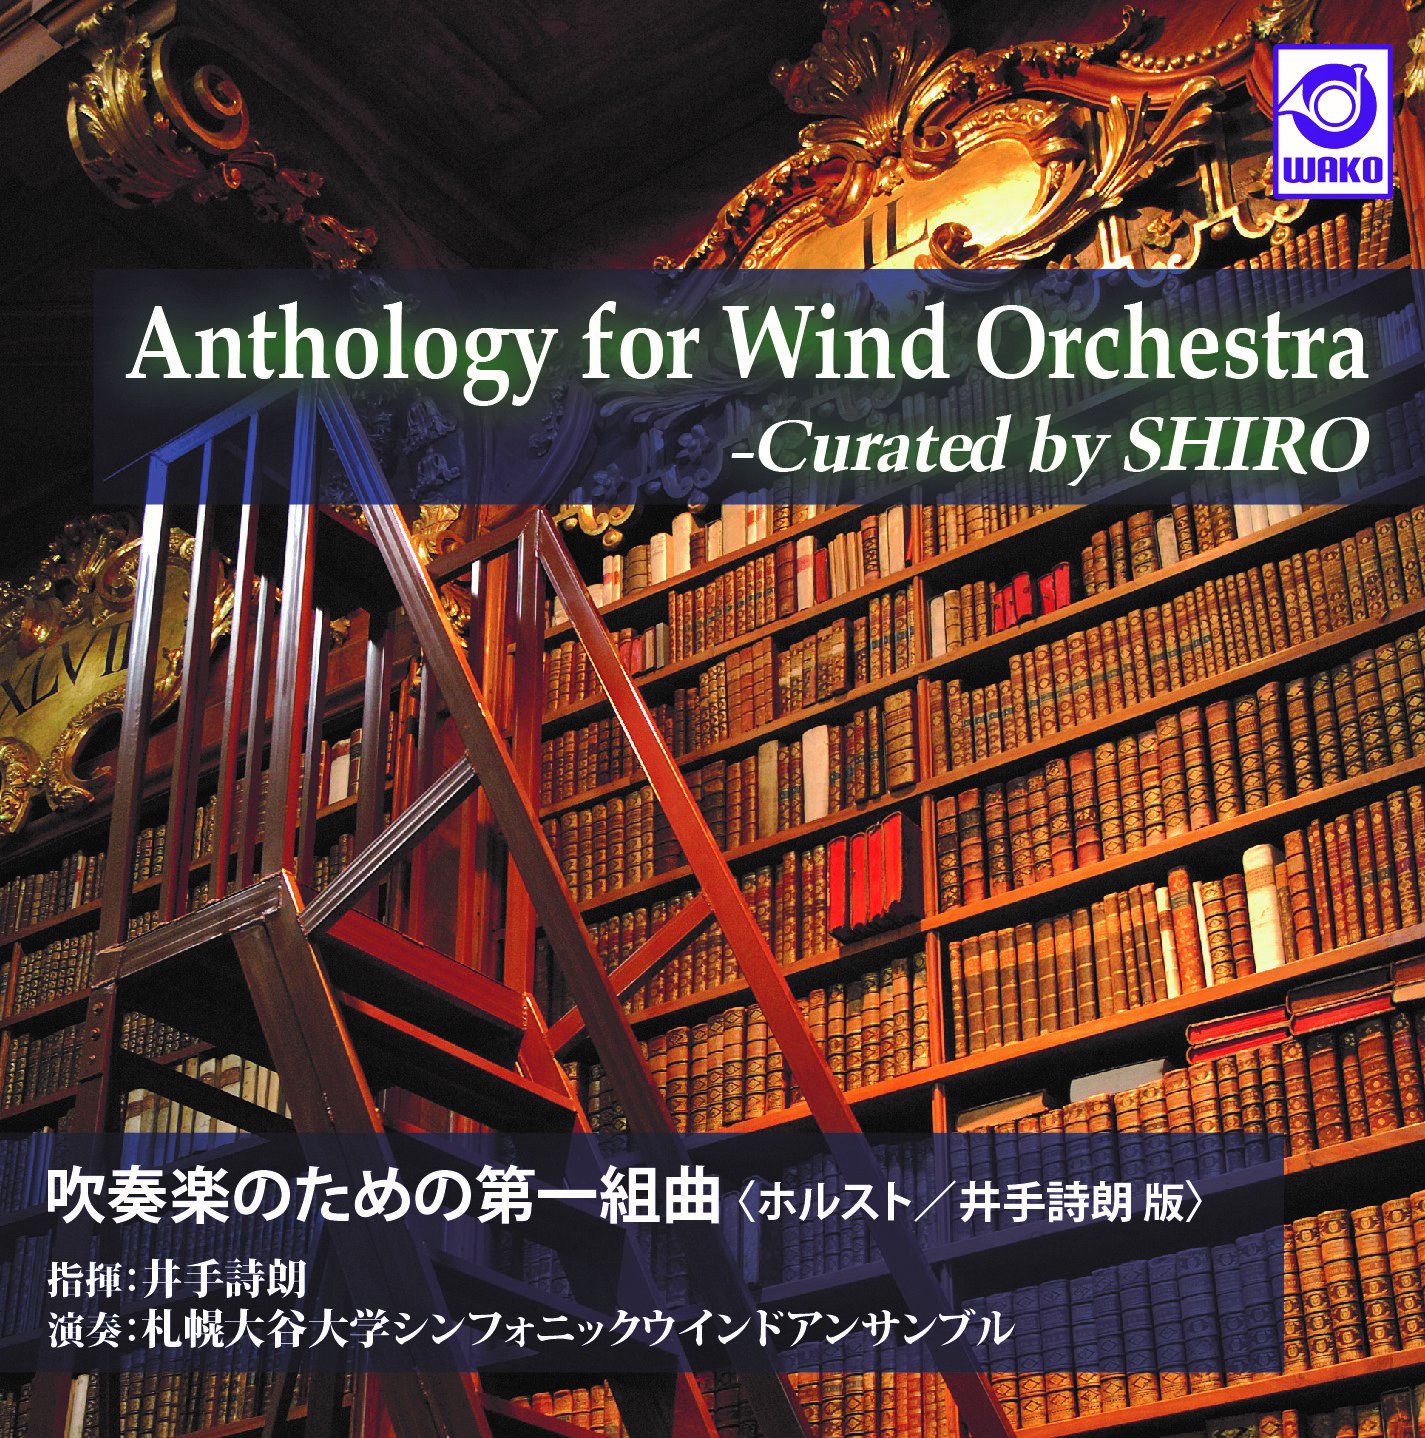 吹奏楽CD】Anthology for Wind Orchestra - Curated by SHIRO 吹奏楽のための第一組曲 〈ホルスト/井手詩朗版〉